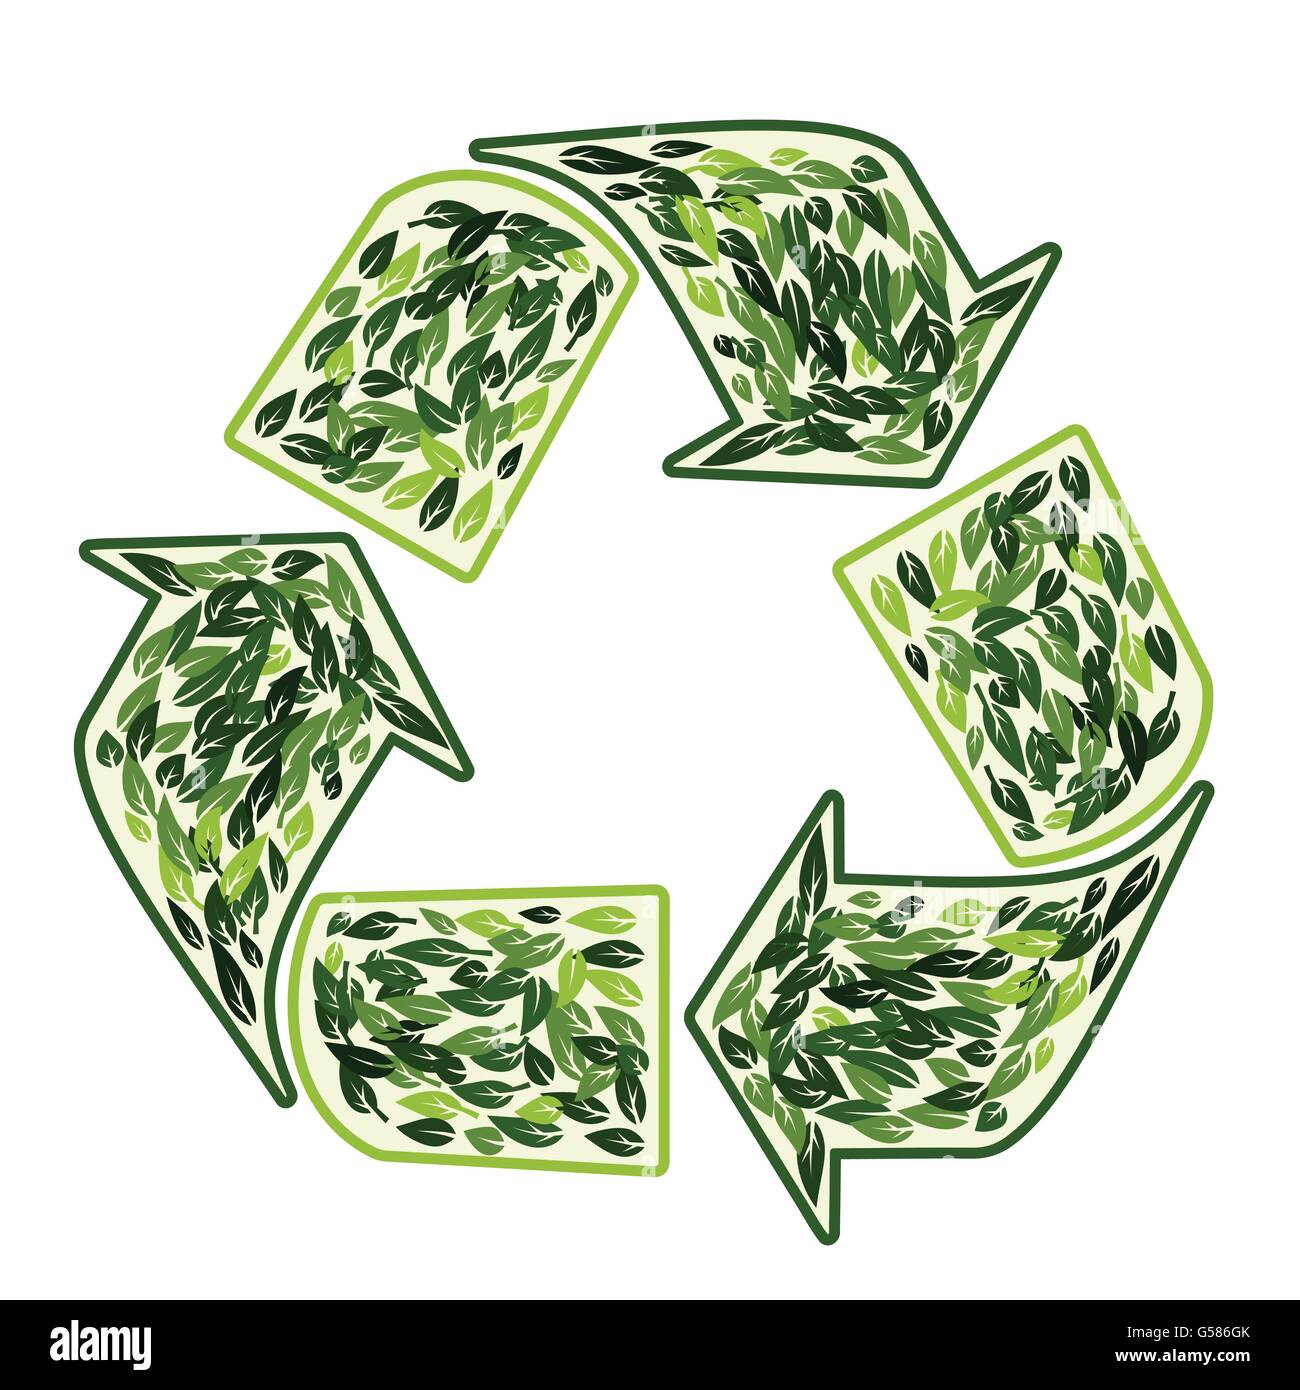 Recycling-Symbol mit grünen Blätter Ökologie Umwelt Schutz Vektor Konzeption isoliert auf weiss Stock Vektor